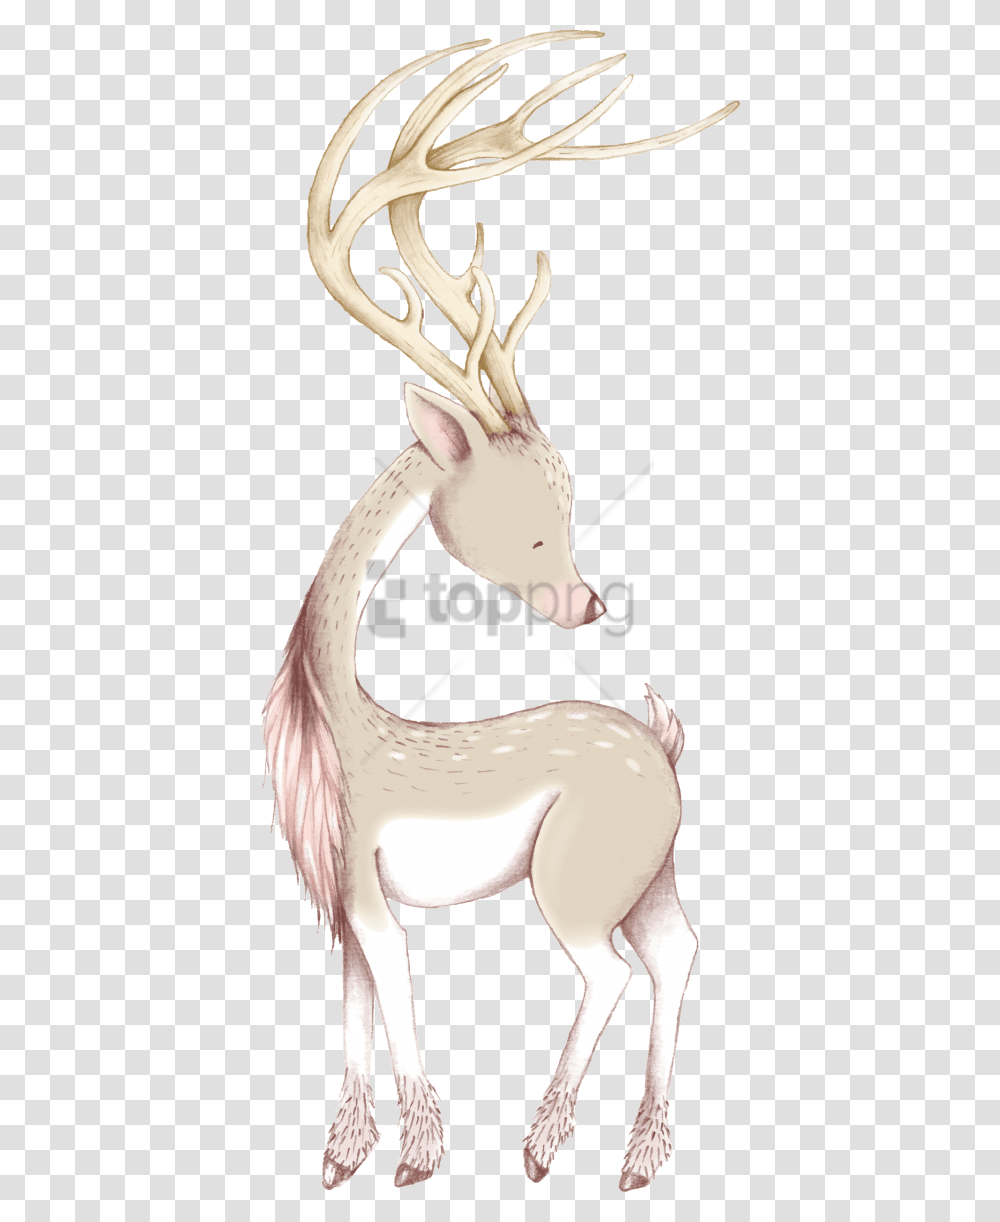 Free Cute Christmas Deer Ornaments Amp Oval Reindeer, Mammal, Animal, Wildlife, Aardvark Transparent Png